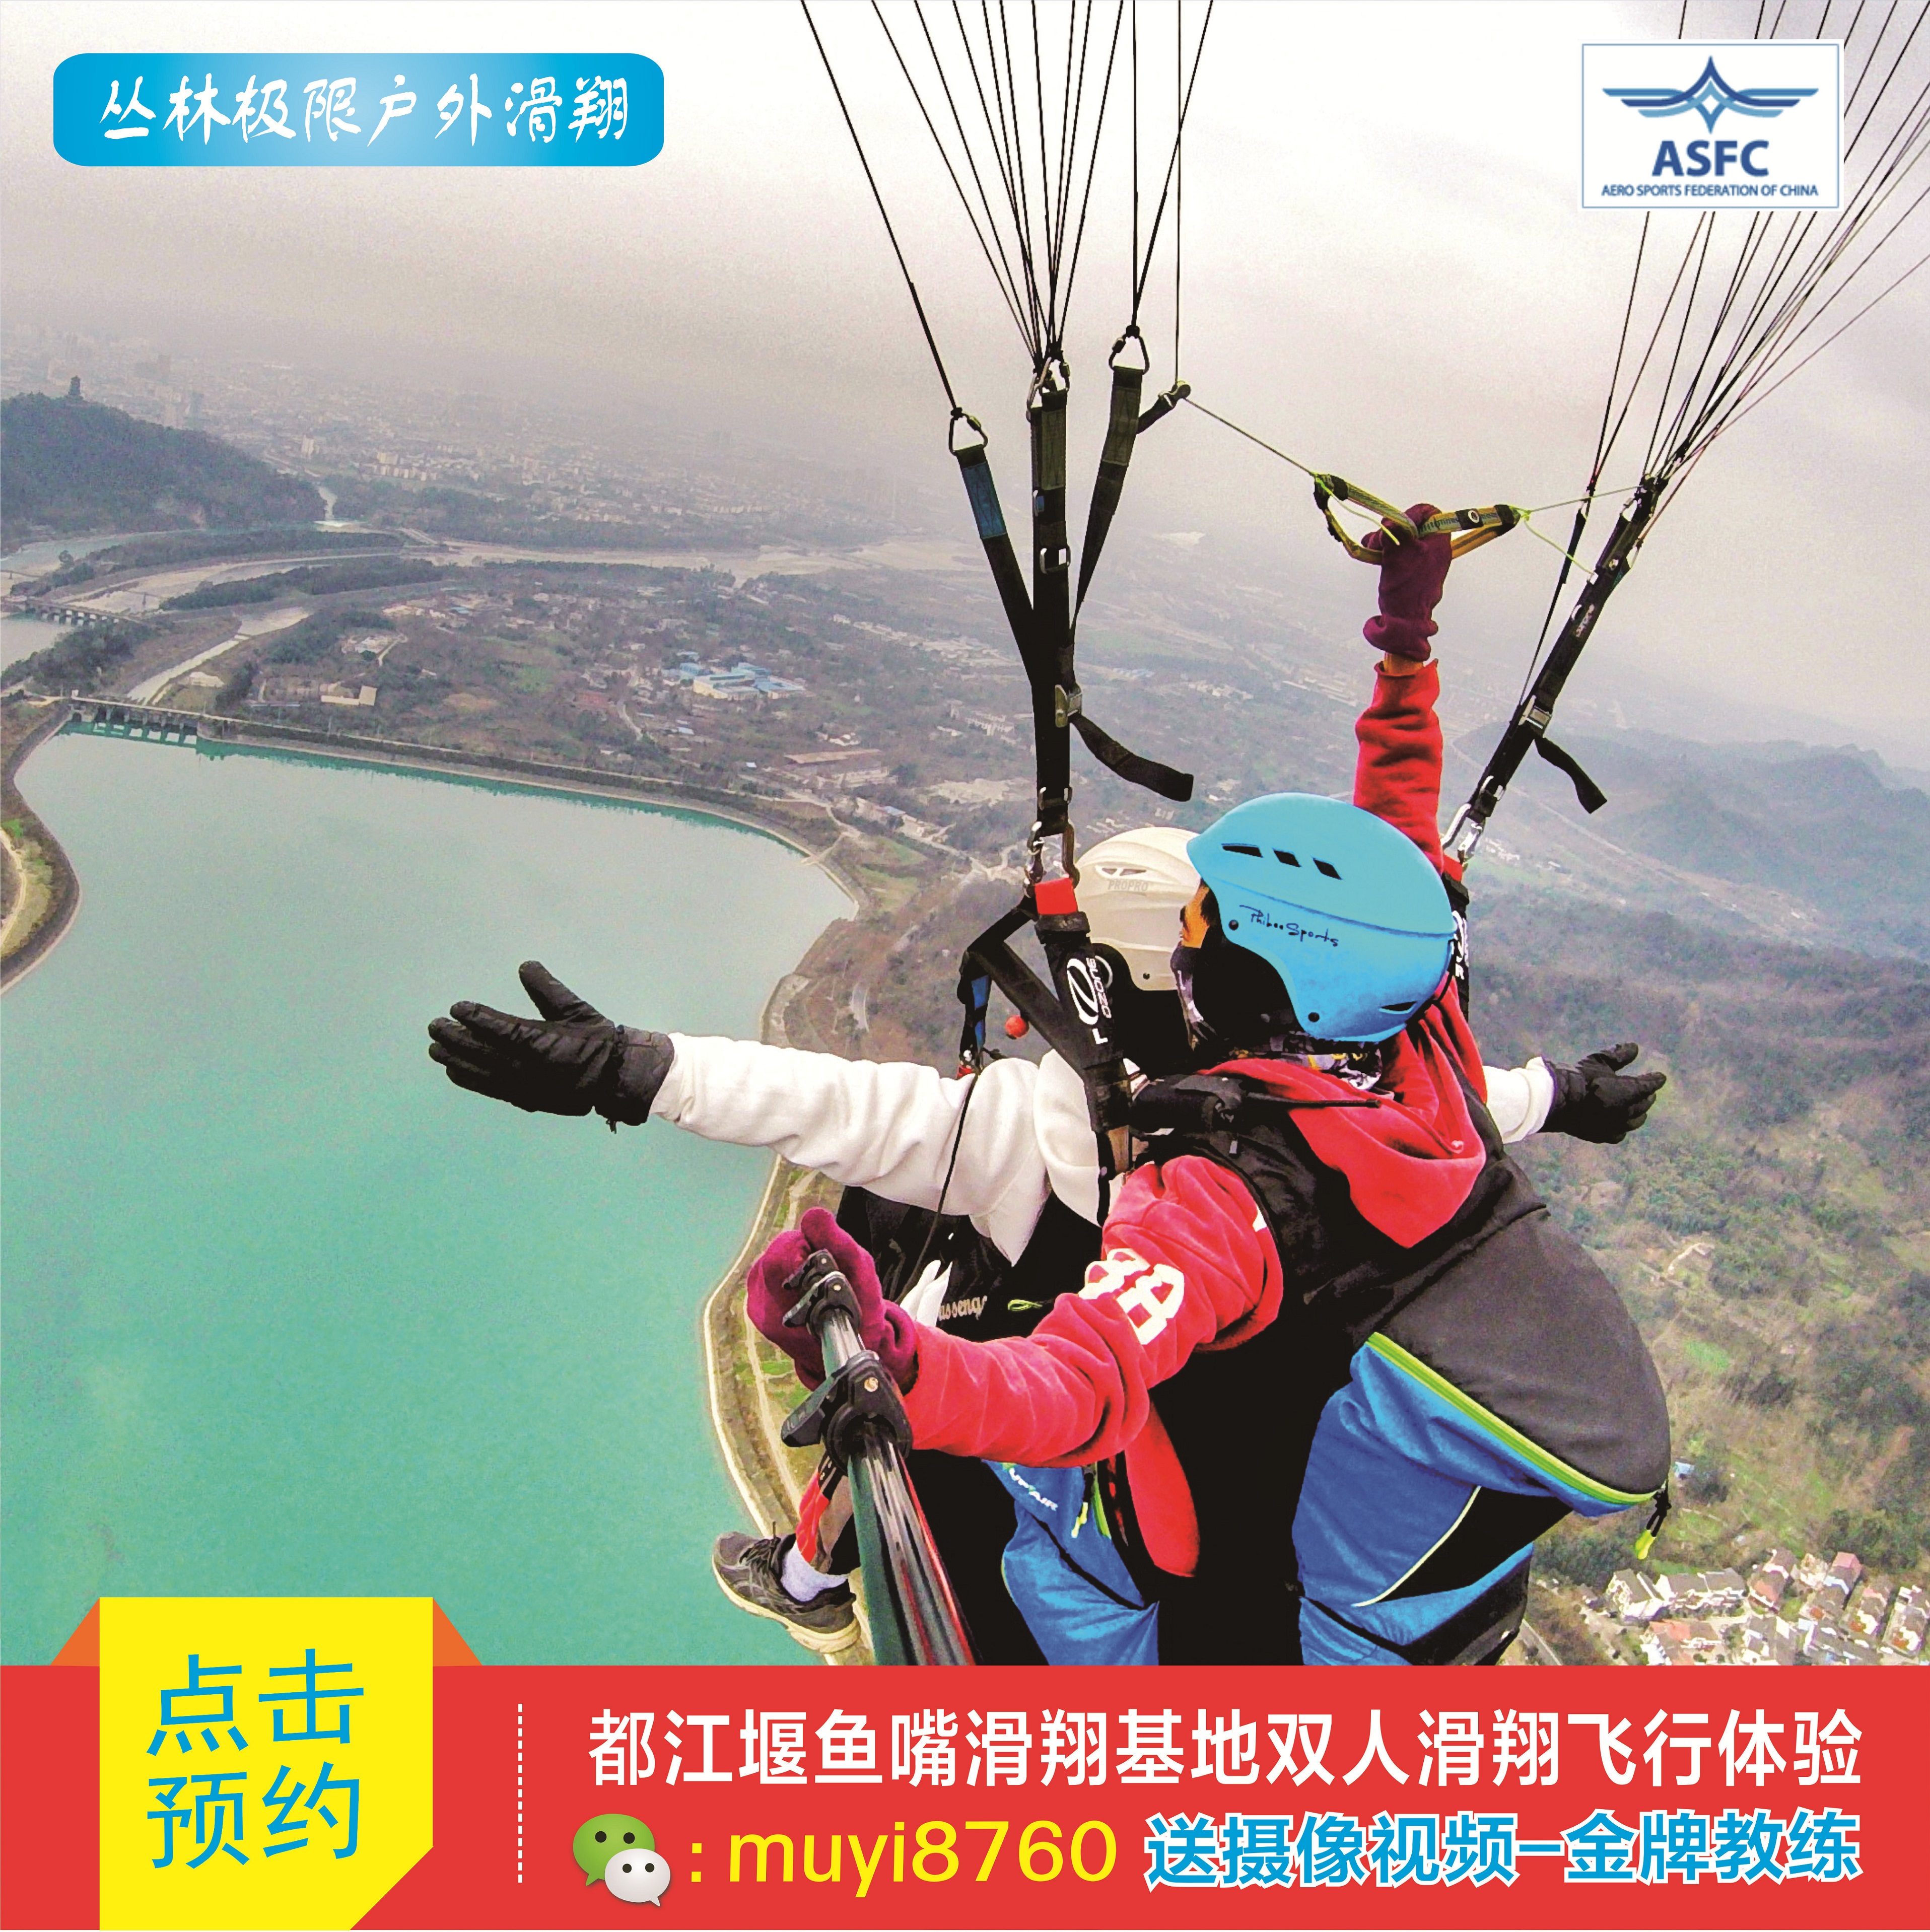 成都都江堰鱼嘴滑翔伞营地游太古里青城山~750米双人高山飞行体验